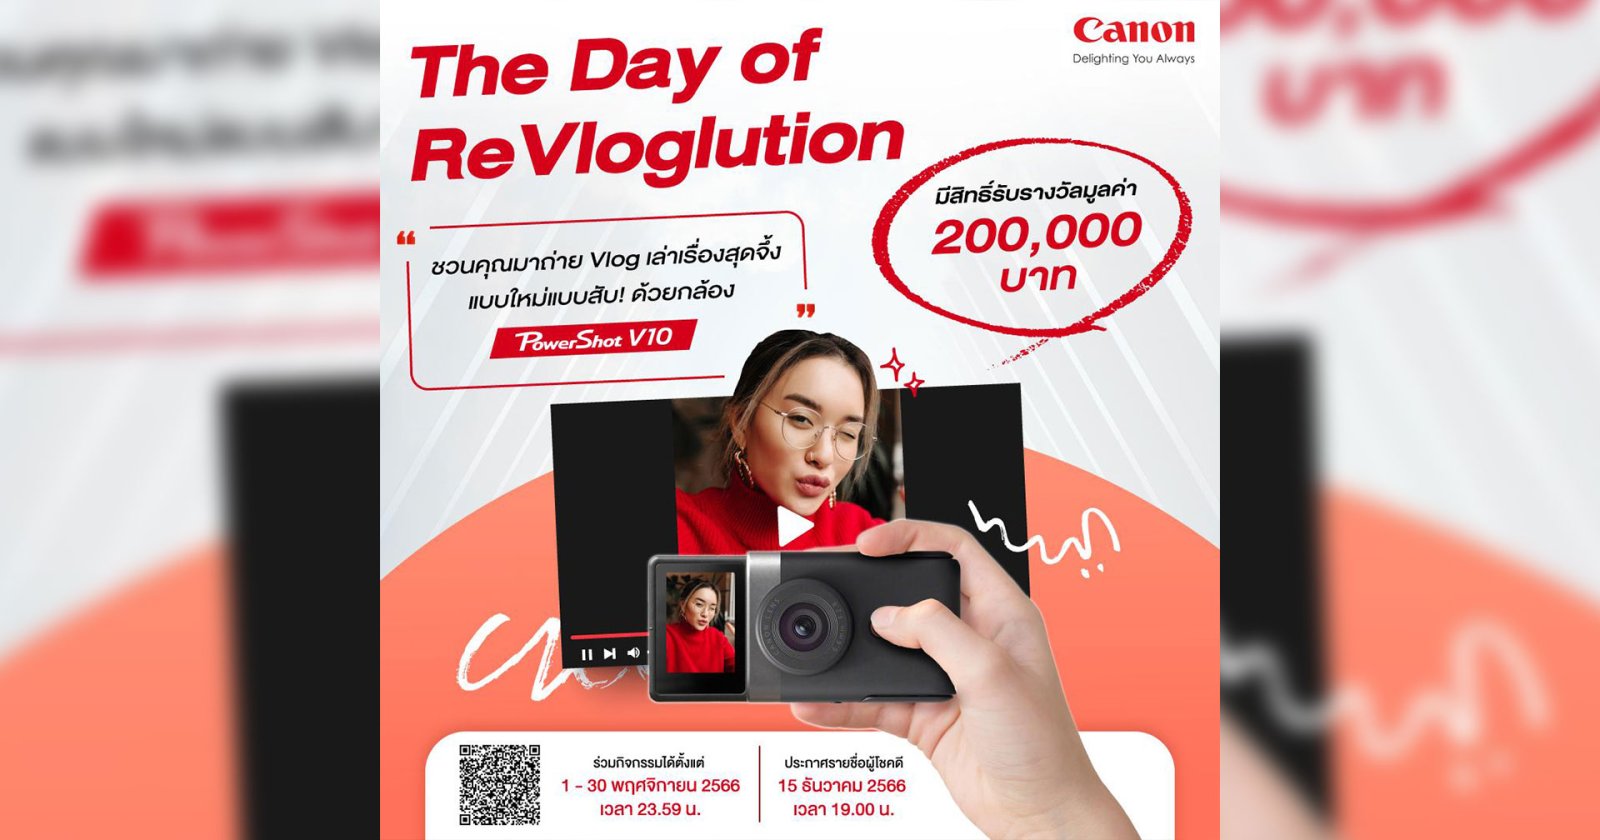 Vlog ดีมีเงินรางวัล 200,000! กับกิจกรรม ‘The Day of ReVloglution’ ปลุกความเป็นคอนเทนต์ครีเอเตอร์ ด้วยกล้อง Canon PowerShot V10